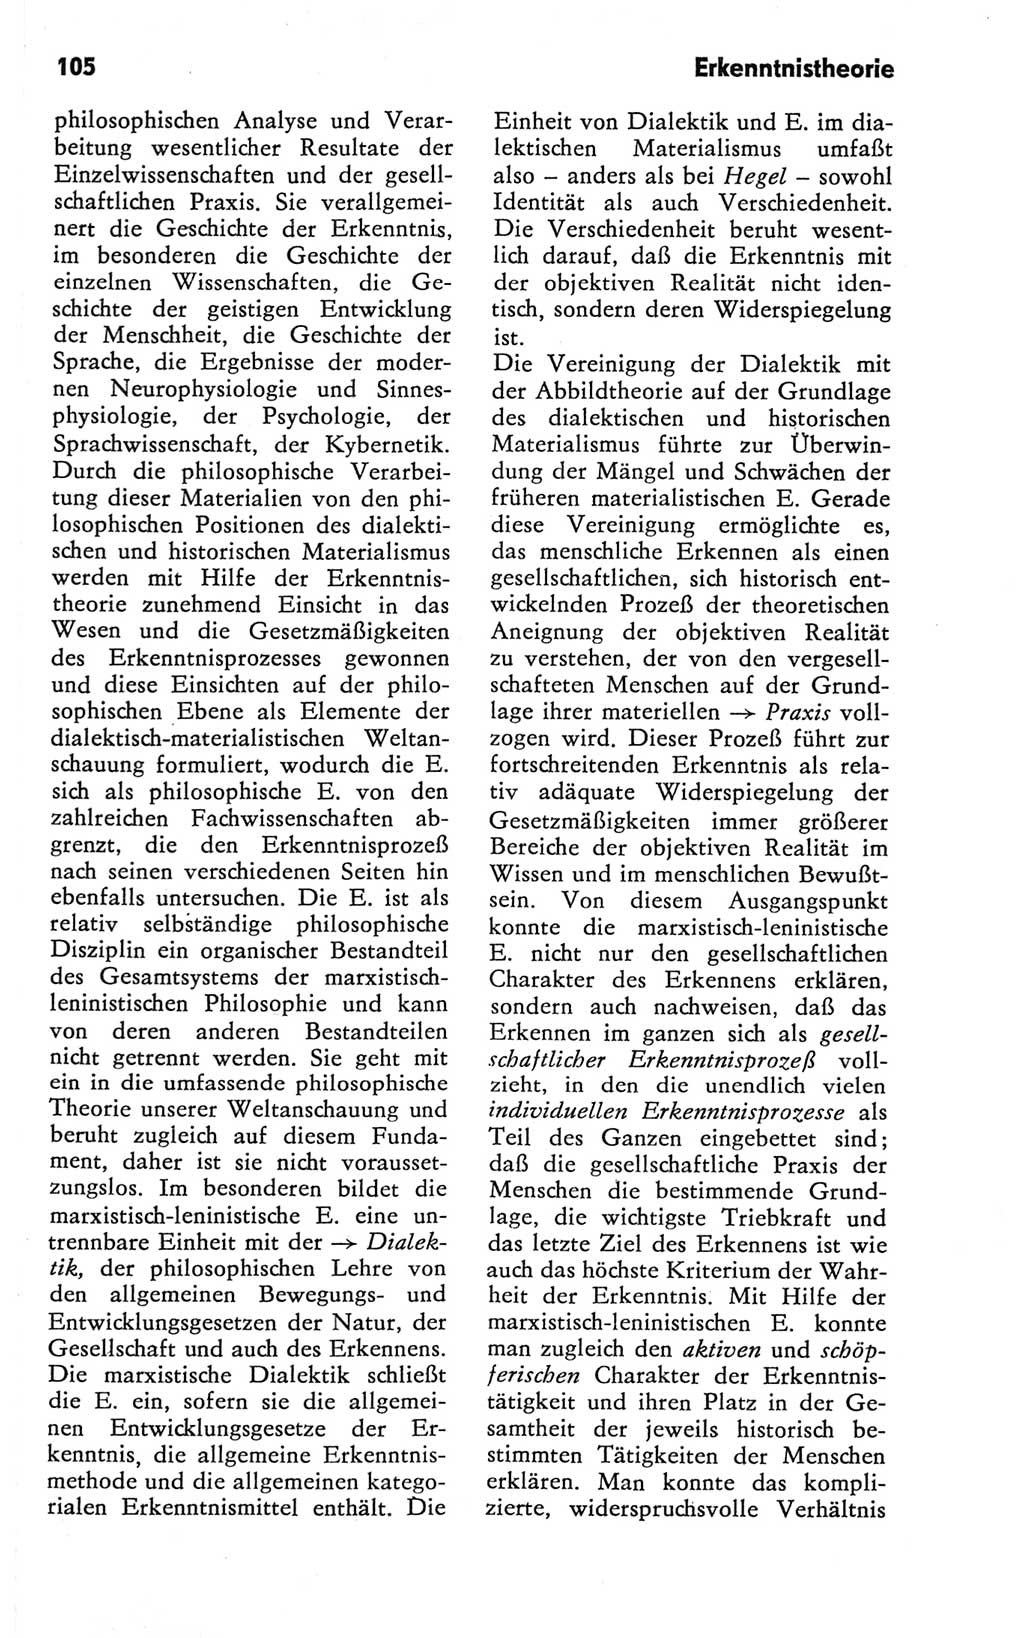 Kleines Wörterbuch der marxistisch-leninistischen Philosophie [Deutsche Demokratische Republik (DDR)] 1981, Seite 105 (Kl. Wb. ML Phil. DDR 1981, S. 105)